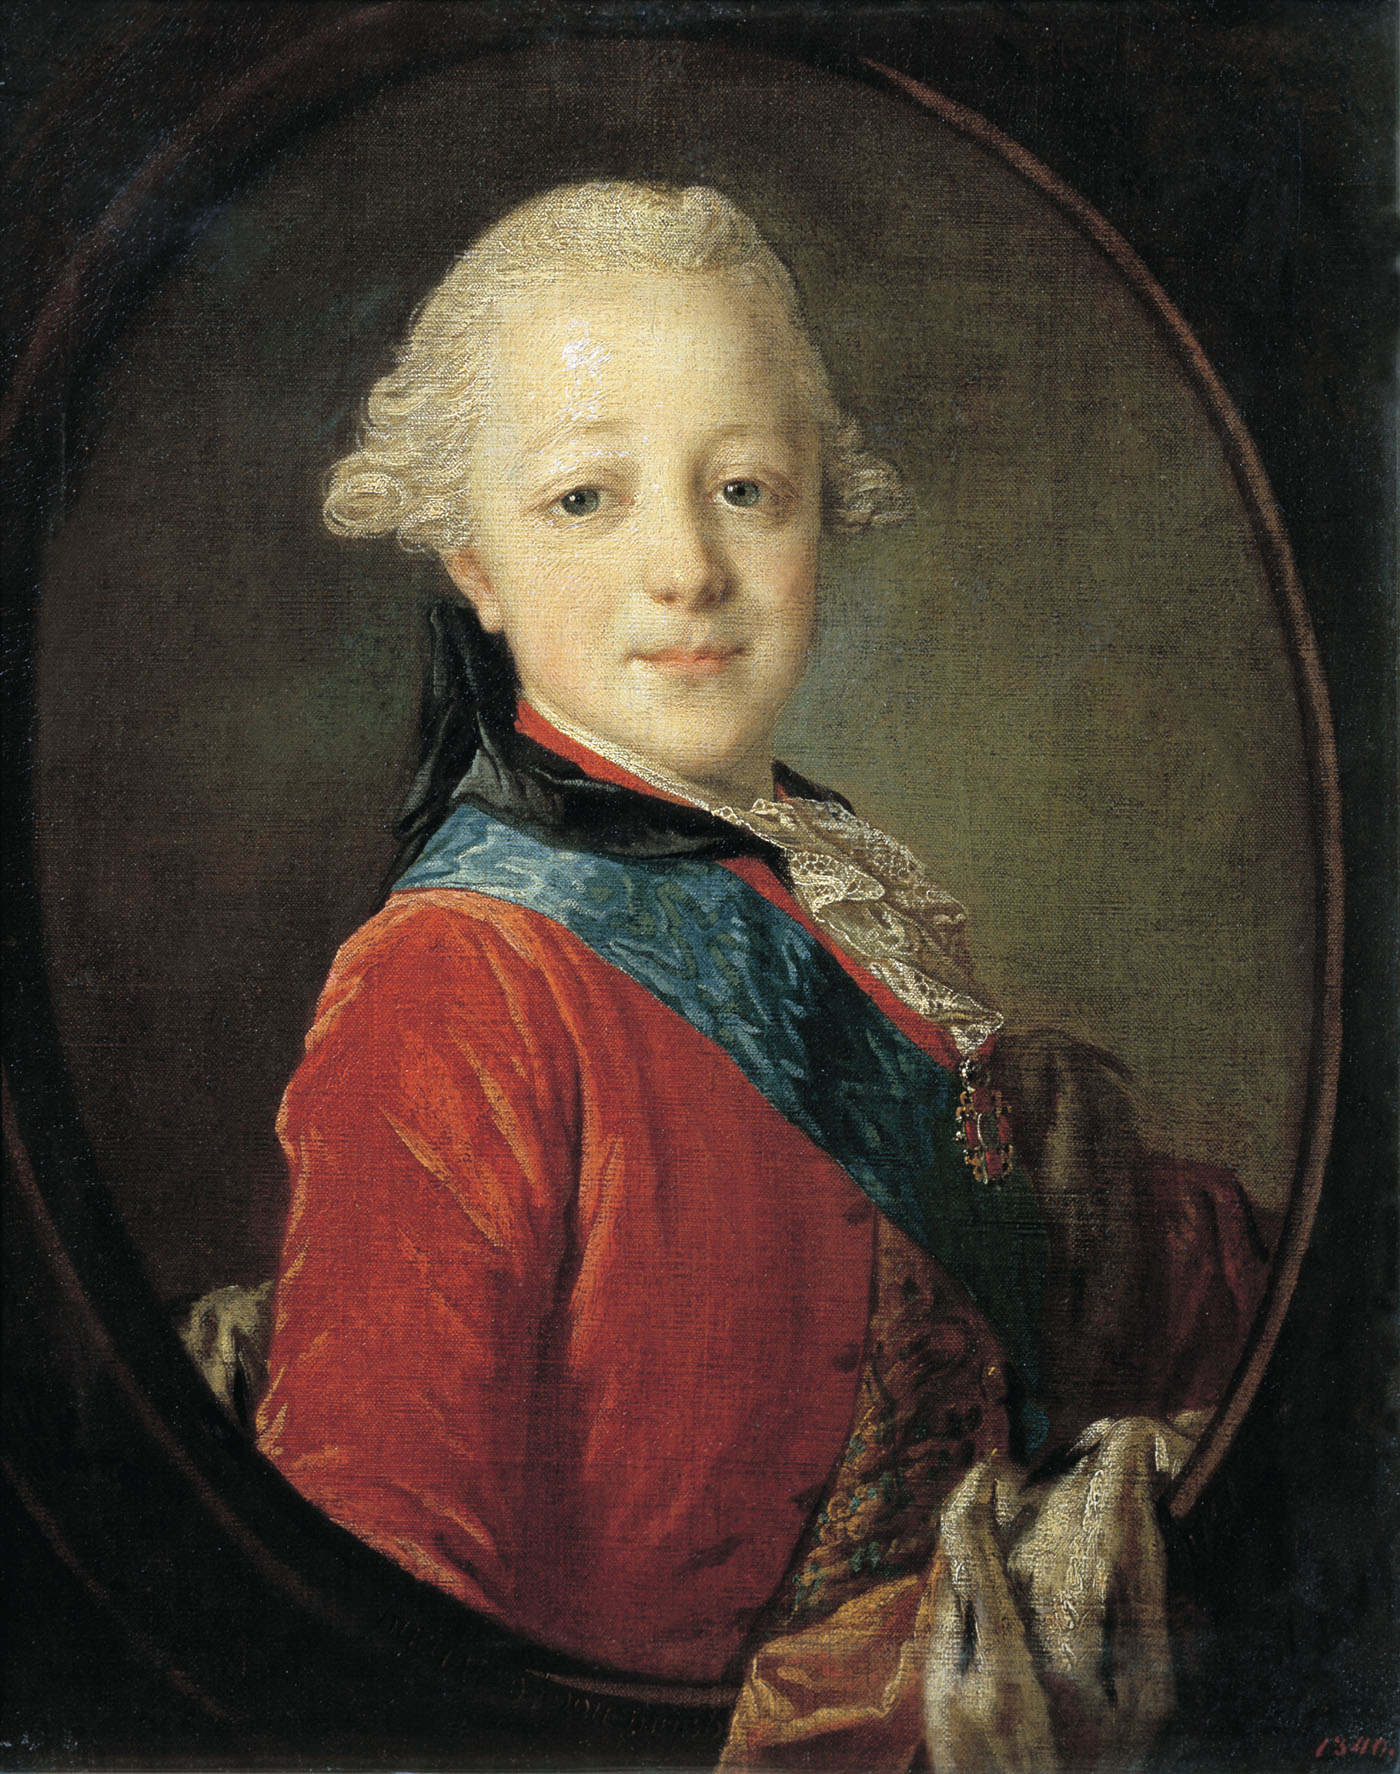 Рокотов. Портрет великого князя Павла Петровича в детстве. 1761